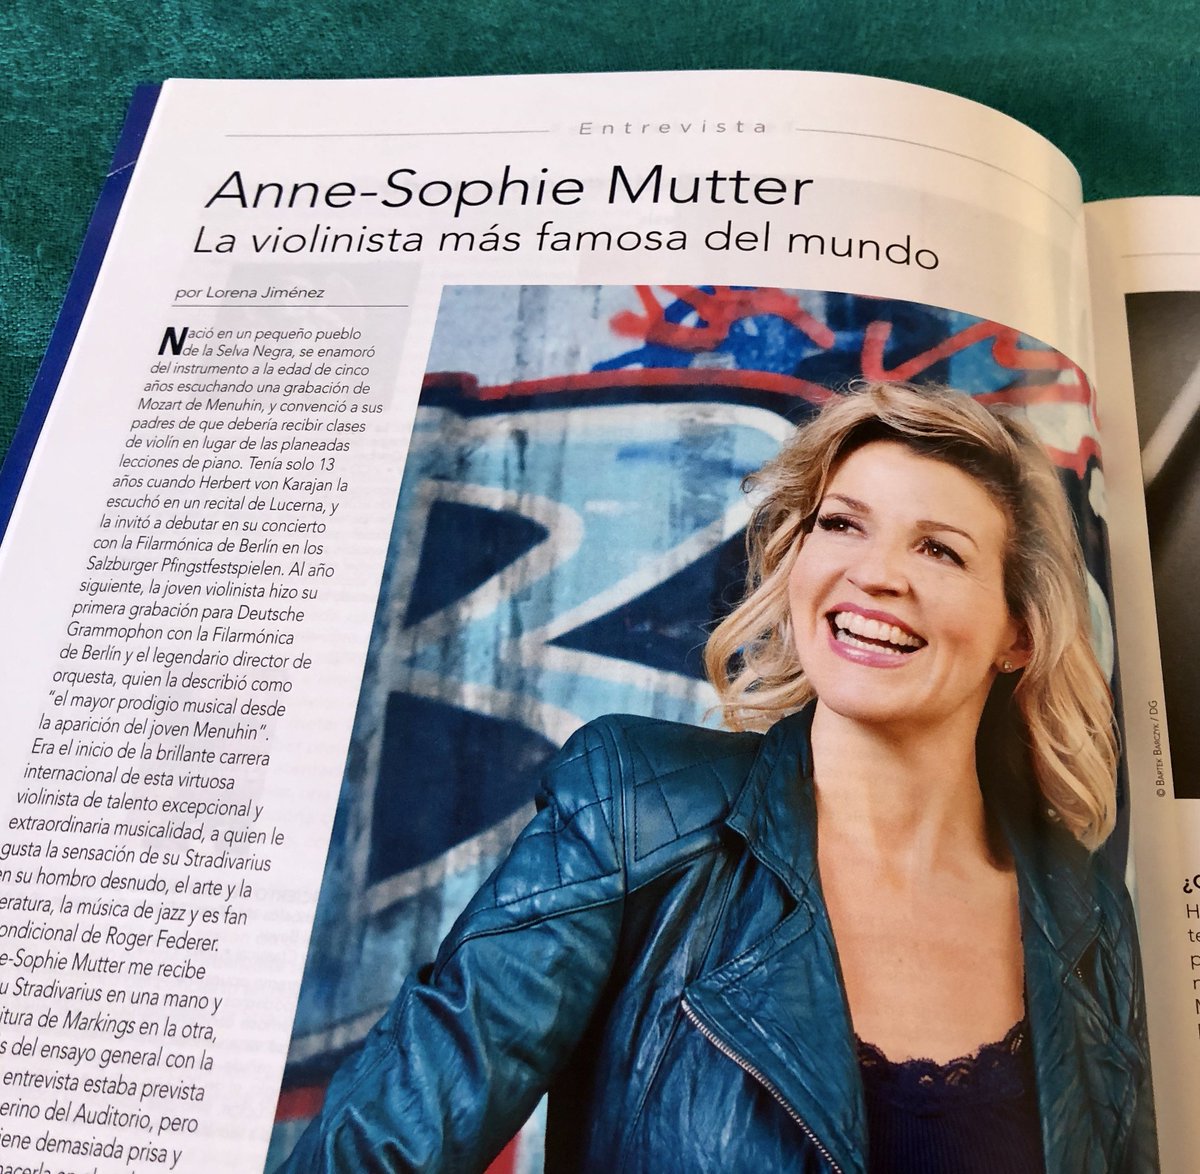 Ya está en la calle mi entrevista con #AnneSophieMutter en el número de enero de @RevistaRITMO #DG120
@DGclassics @ocnesp